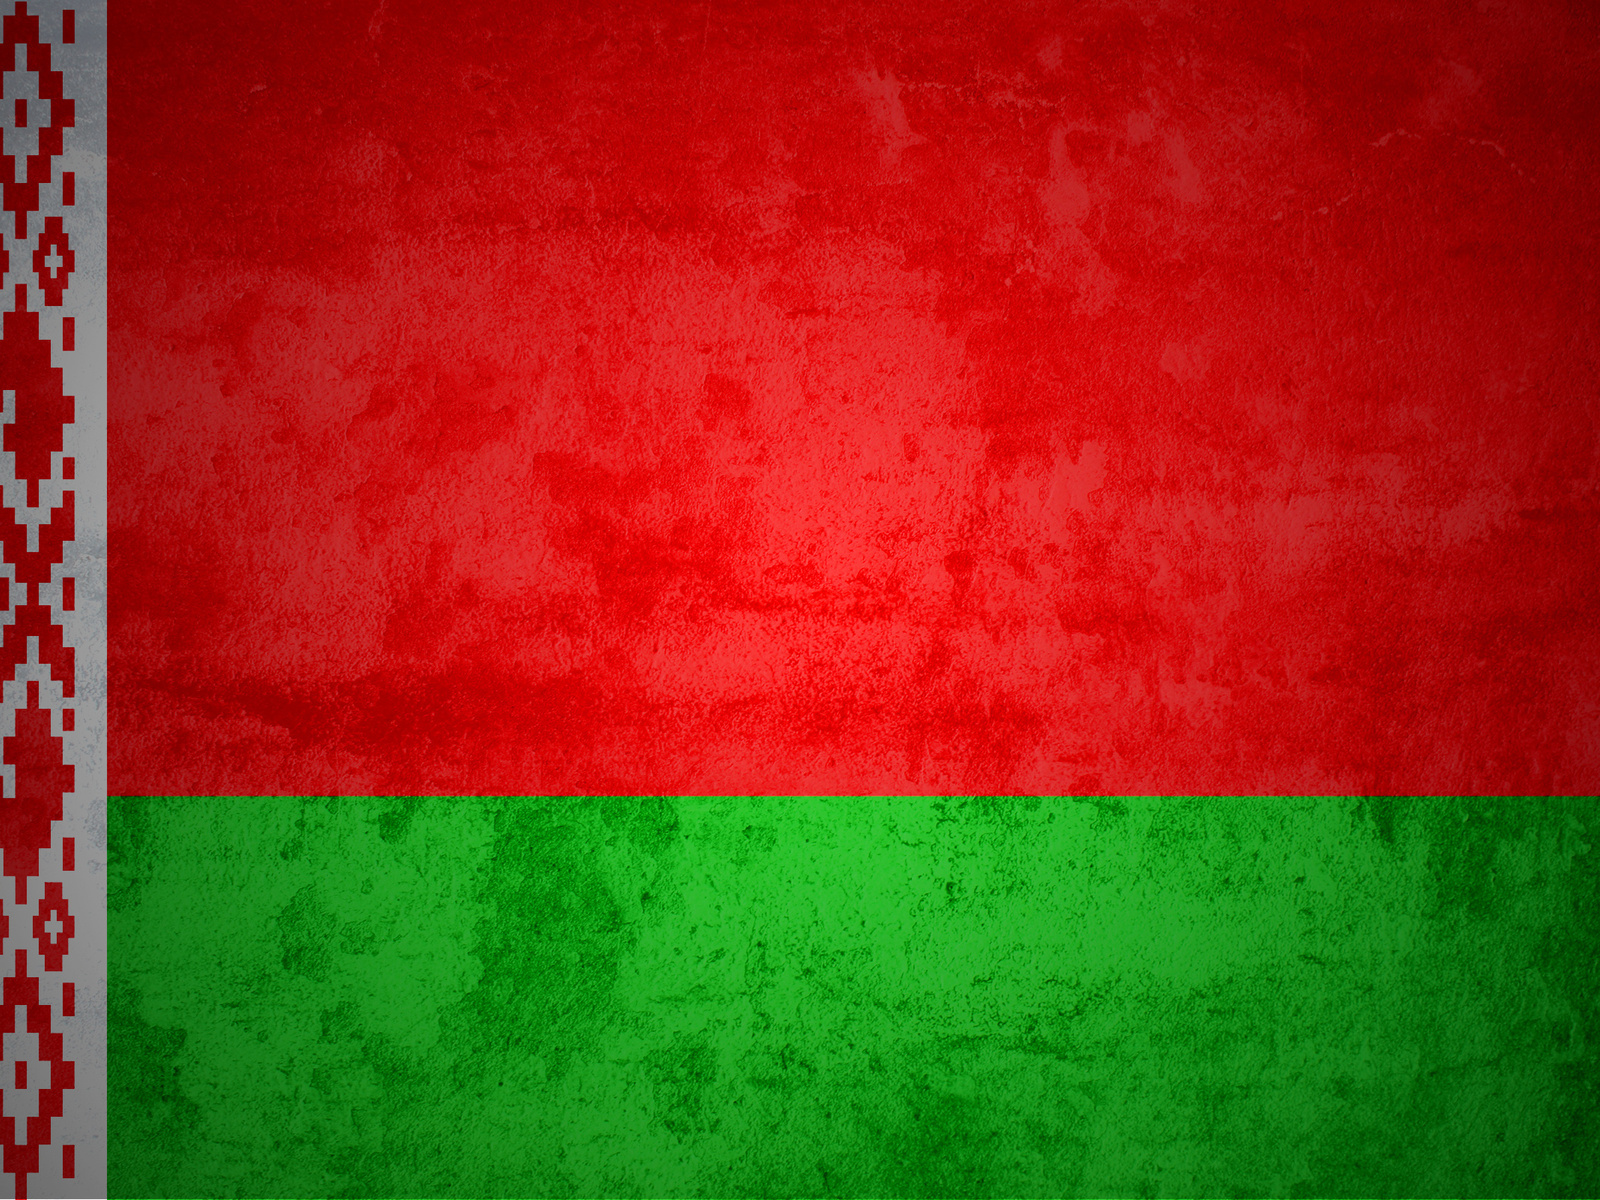 Belarus Flag backgrounds